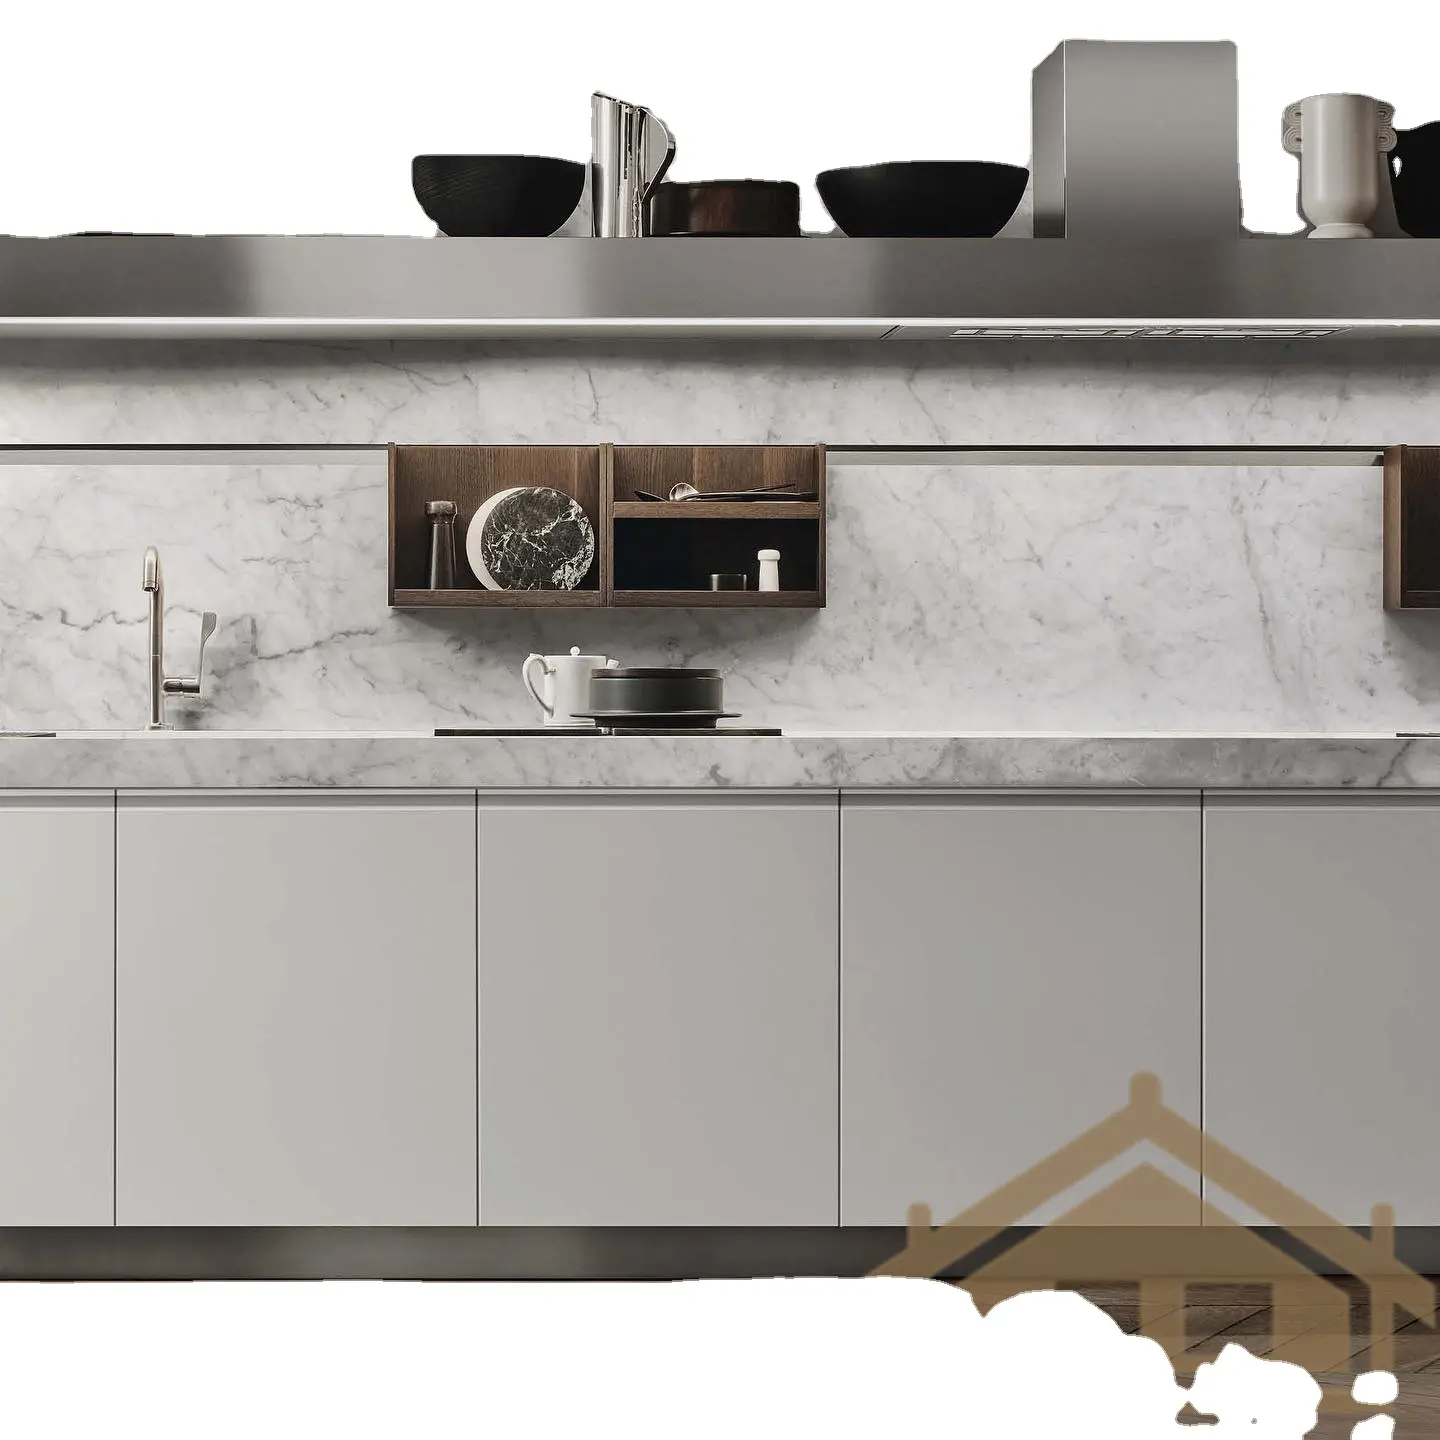 Hoàn thành tủ bếp hiện đại với tay cầm được thiết kế đặc biệt và phòng đựng thức ăn điện